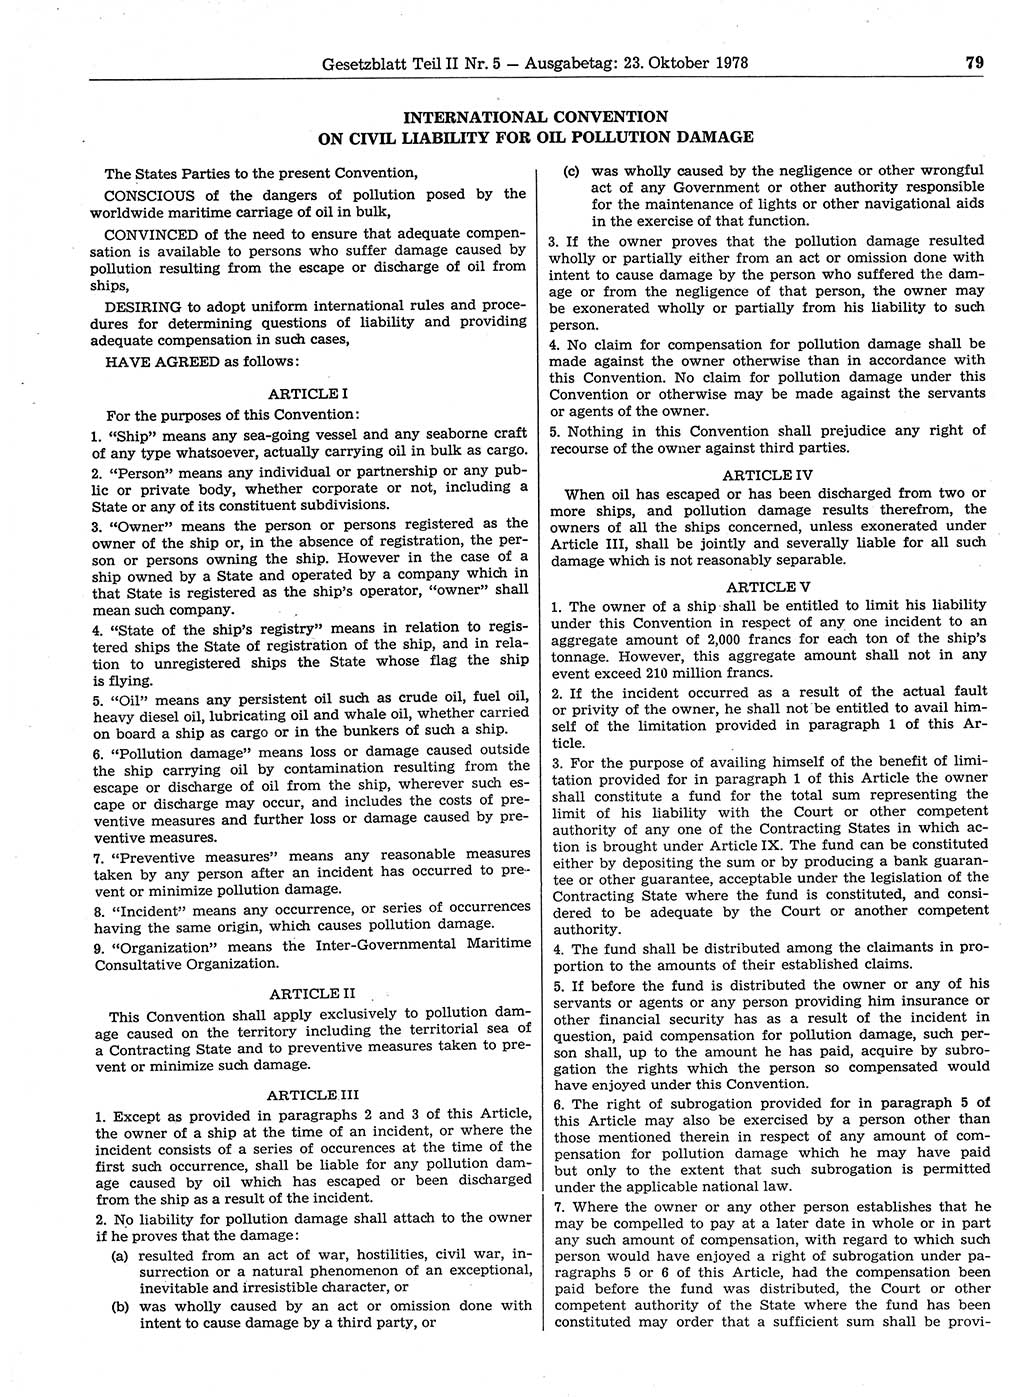 Gesetzblatt (GBl.) der Deutschen Demokratischen Republik (DDR) Teil ⅠⅠ 1978, Seite 79 (GBl. DDR ⅠⅠ 1978, S. 79)